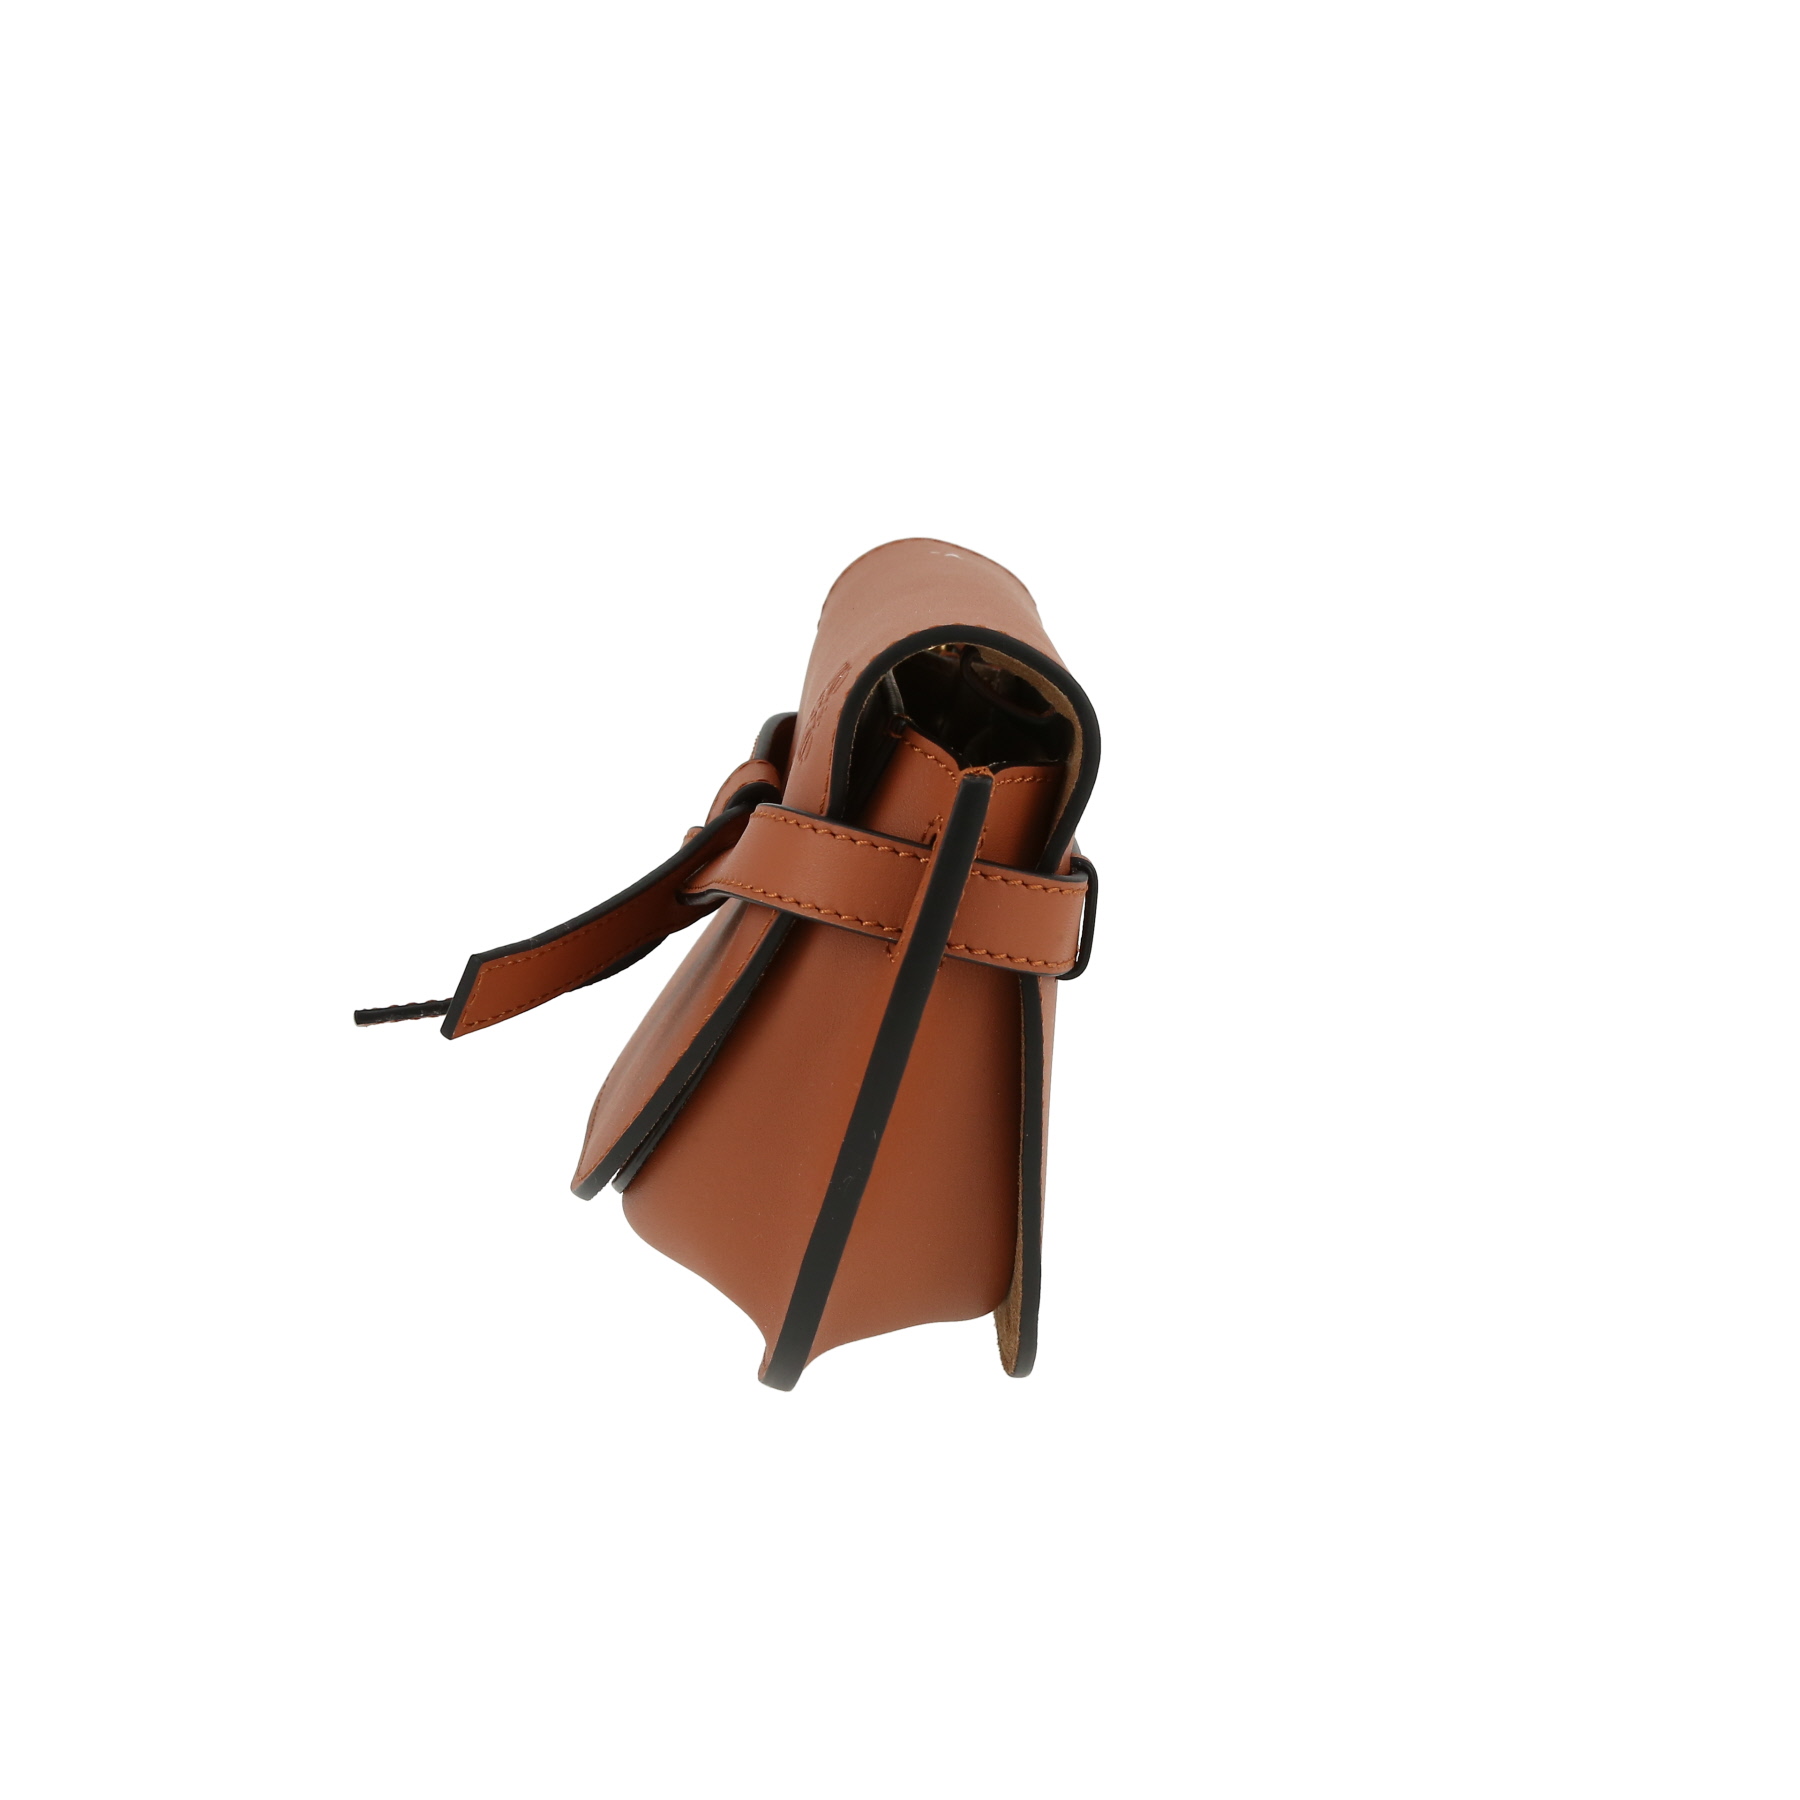 Gate Shoulder Bag In Brown Leather